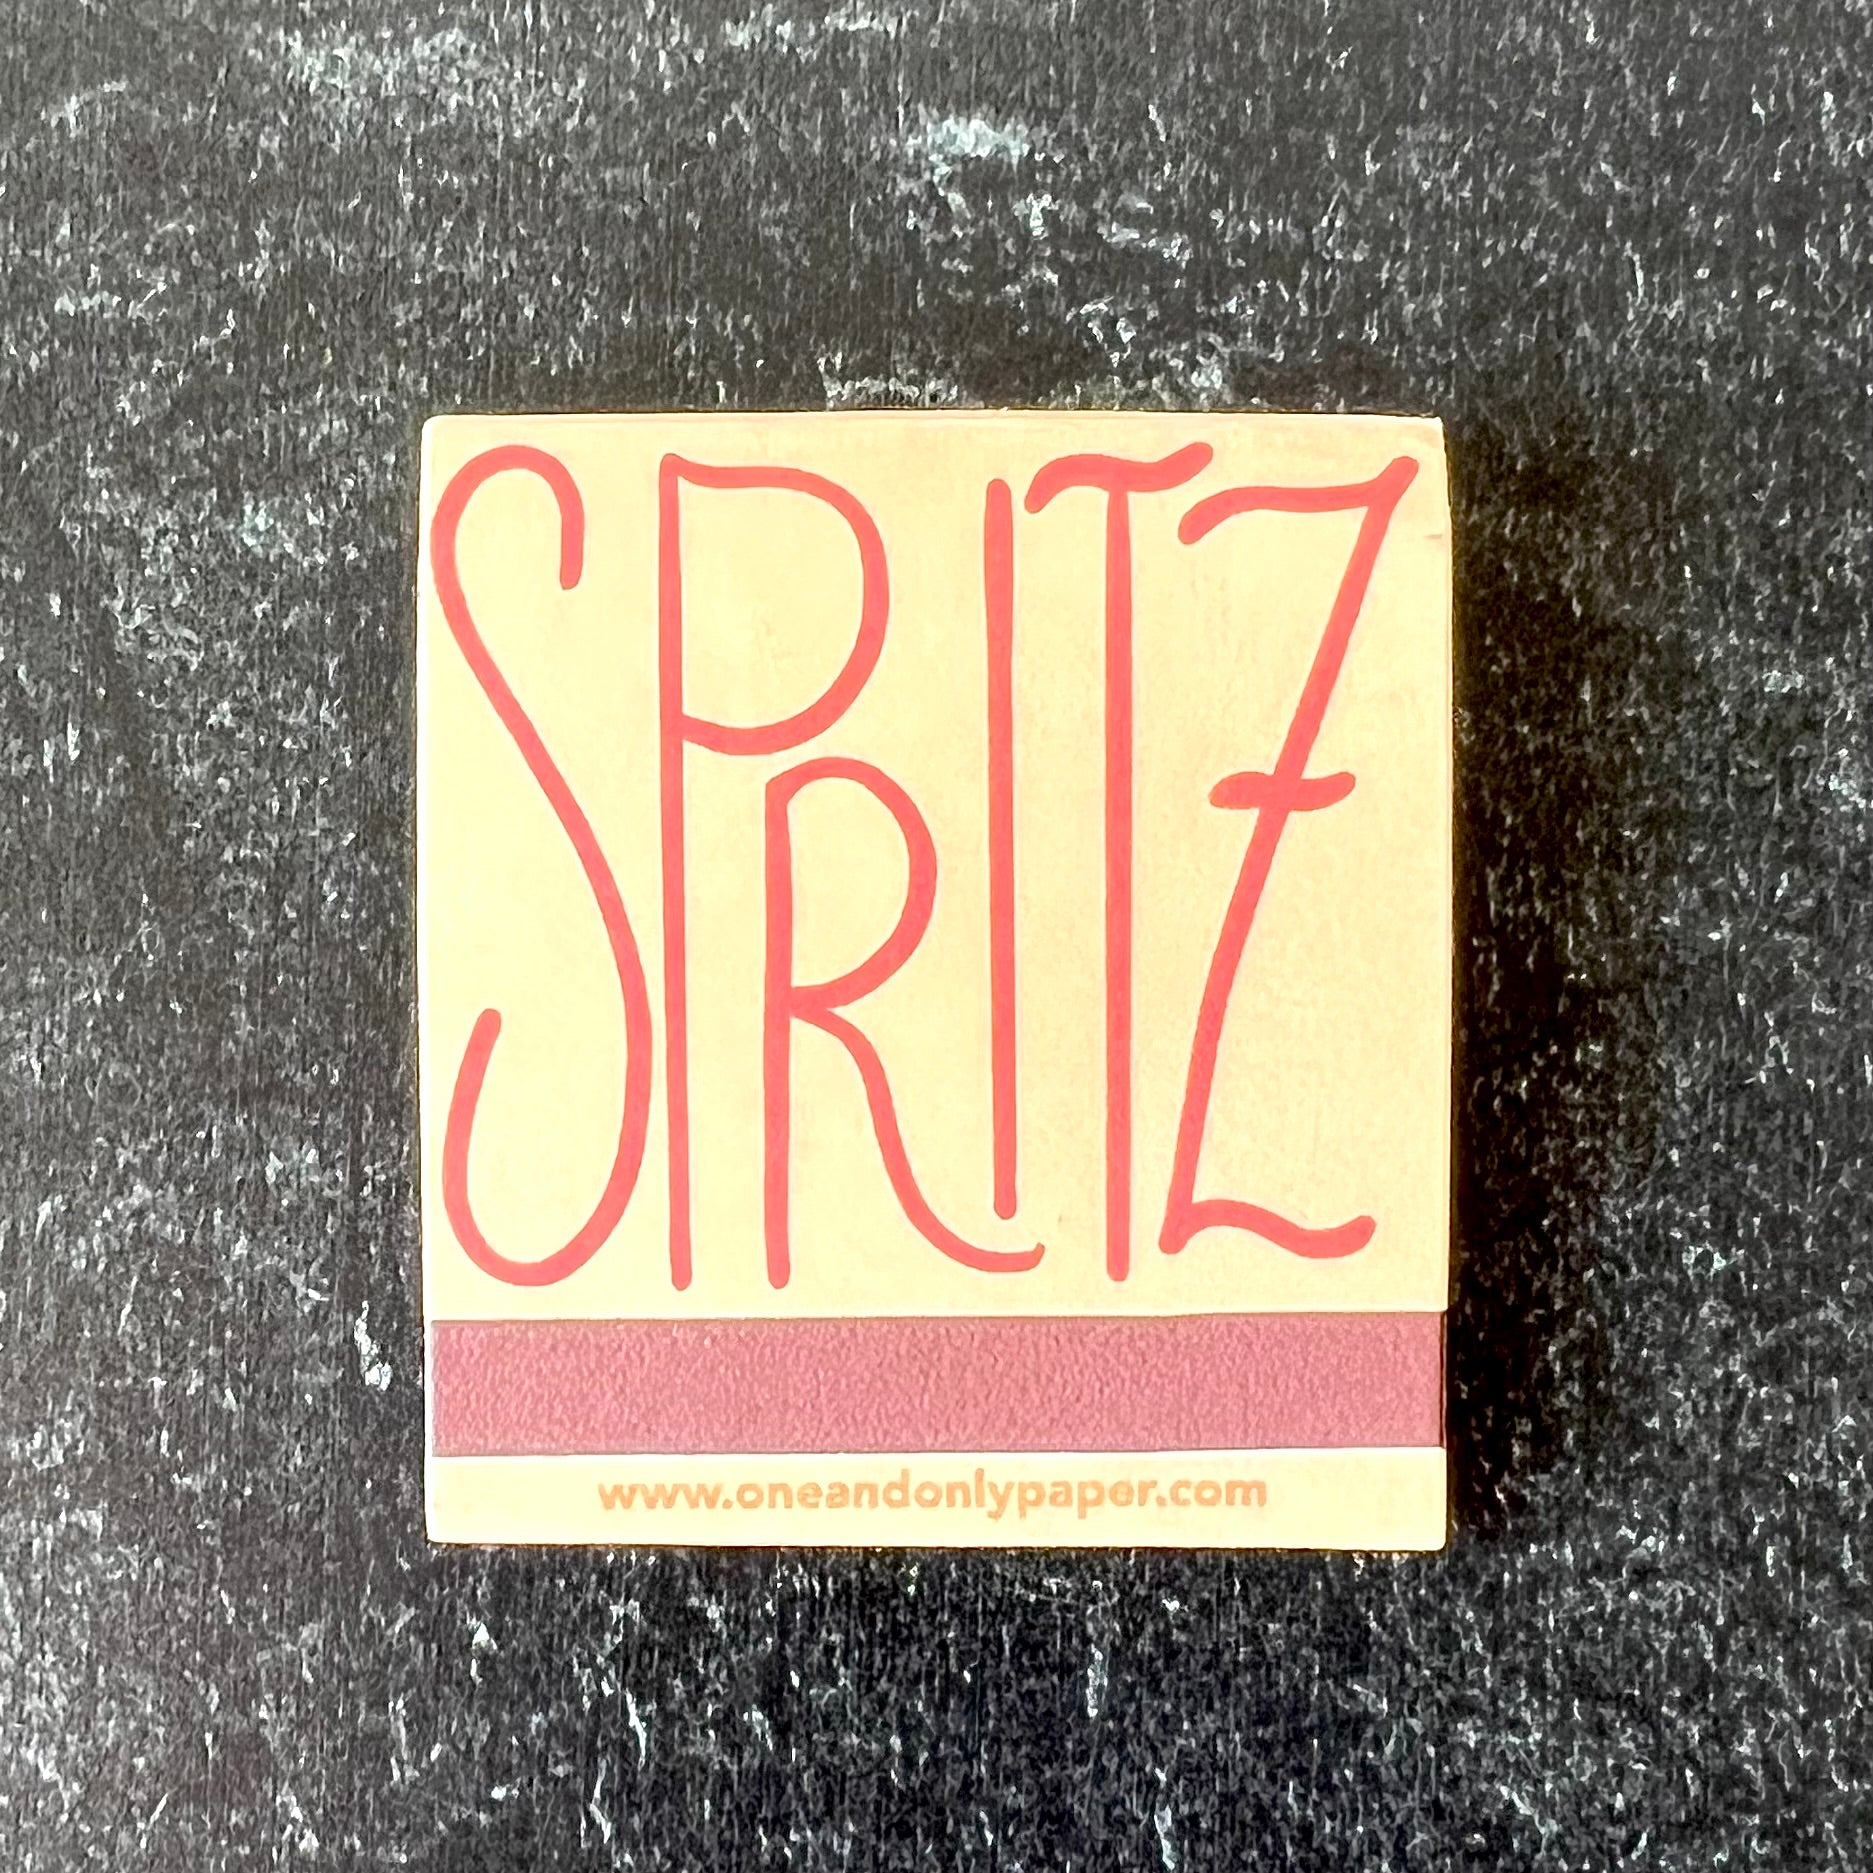 Spritz Italian Summer Matchbook - Humble Abode